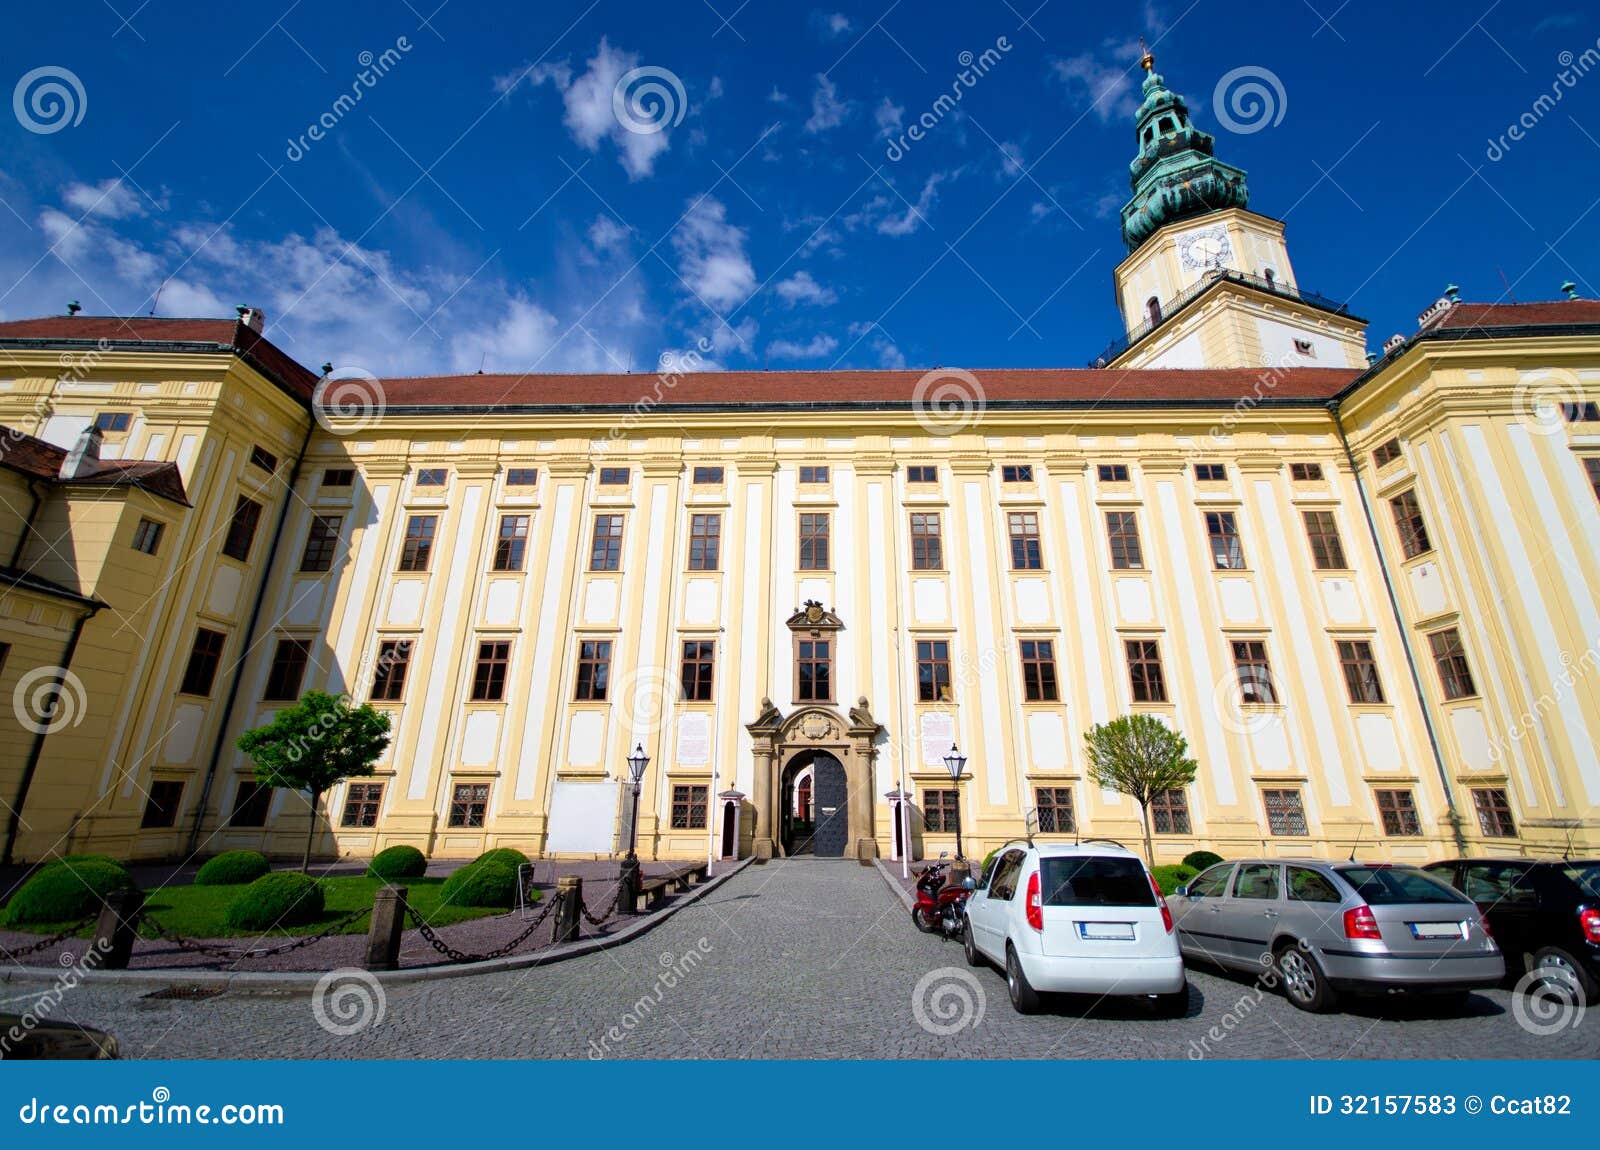 archbishop castle in kromeriz, czech republic